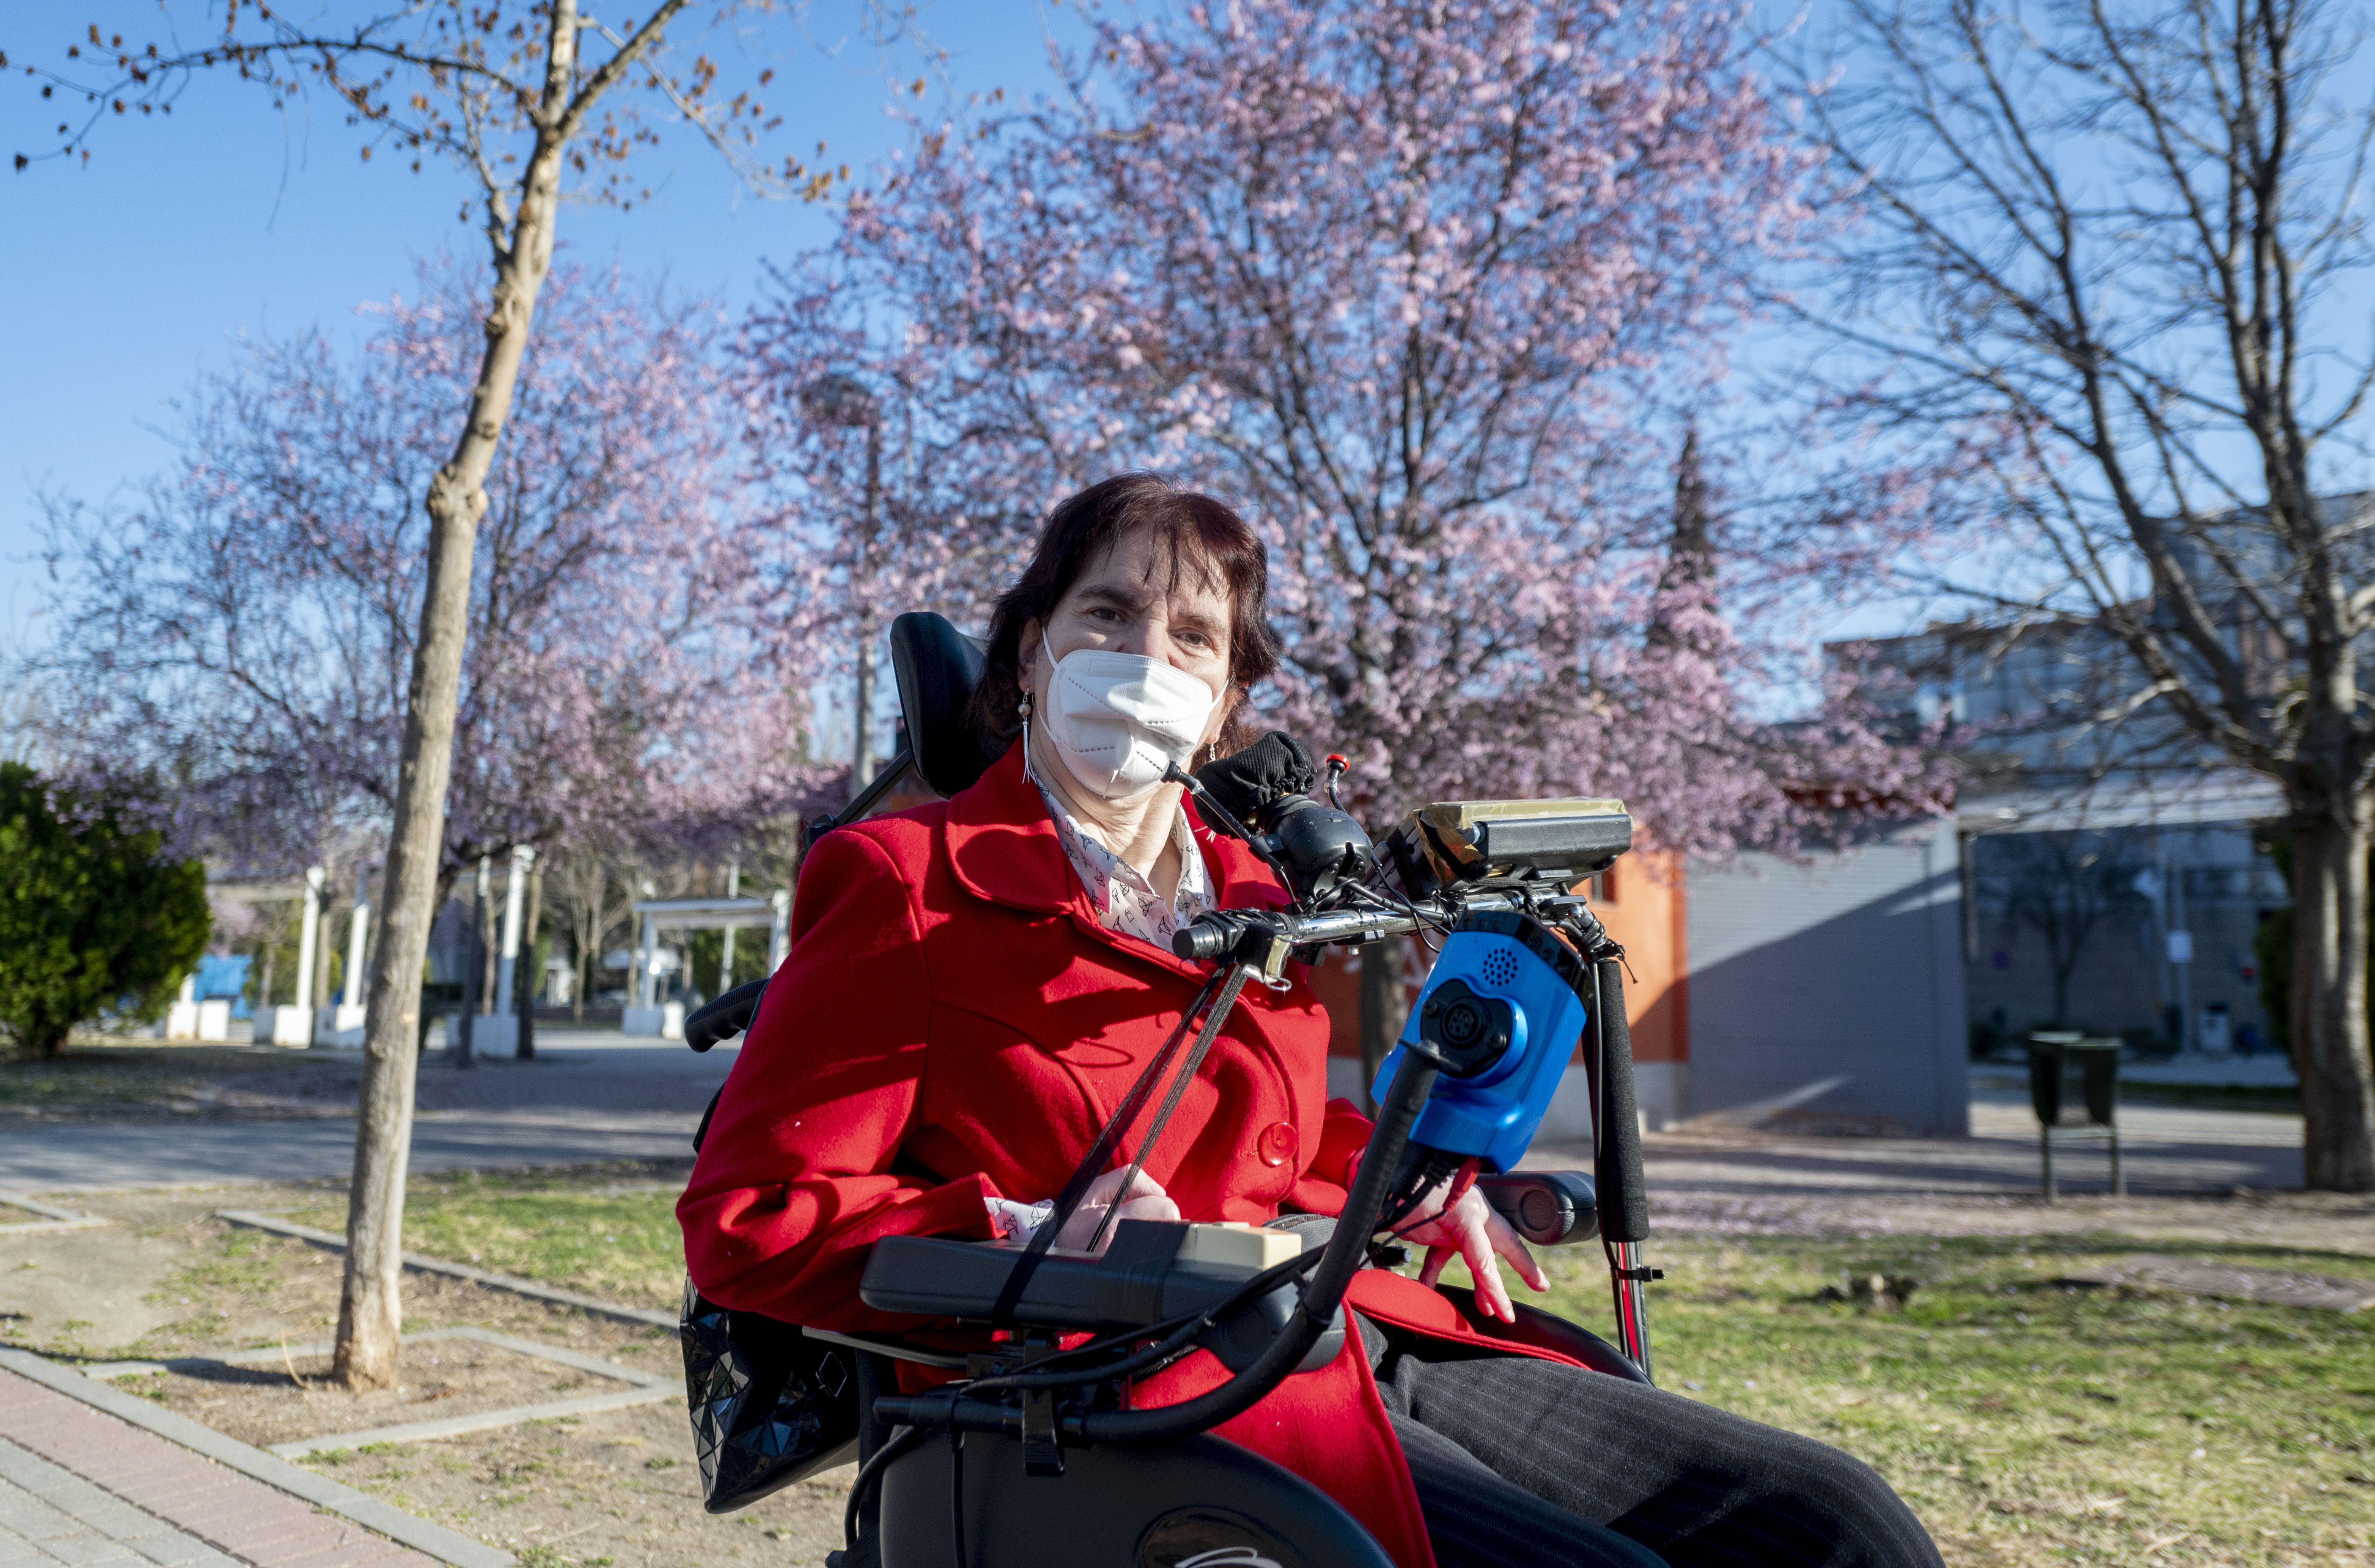 Banco niega cuenta a mujer con parálisis cerebral: "Tienen discapacidades más elevadas que la mía". Foto: Europa Press